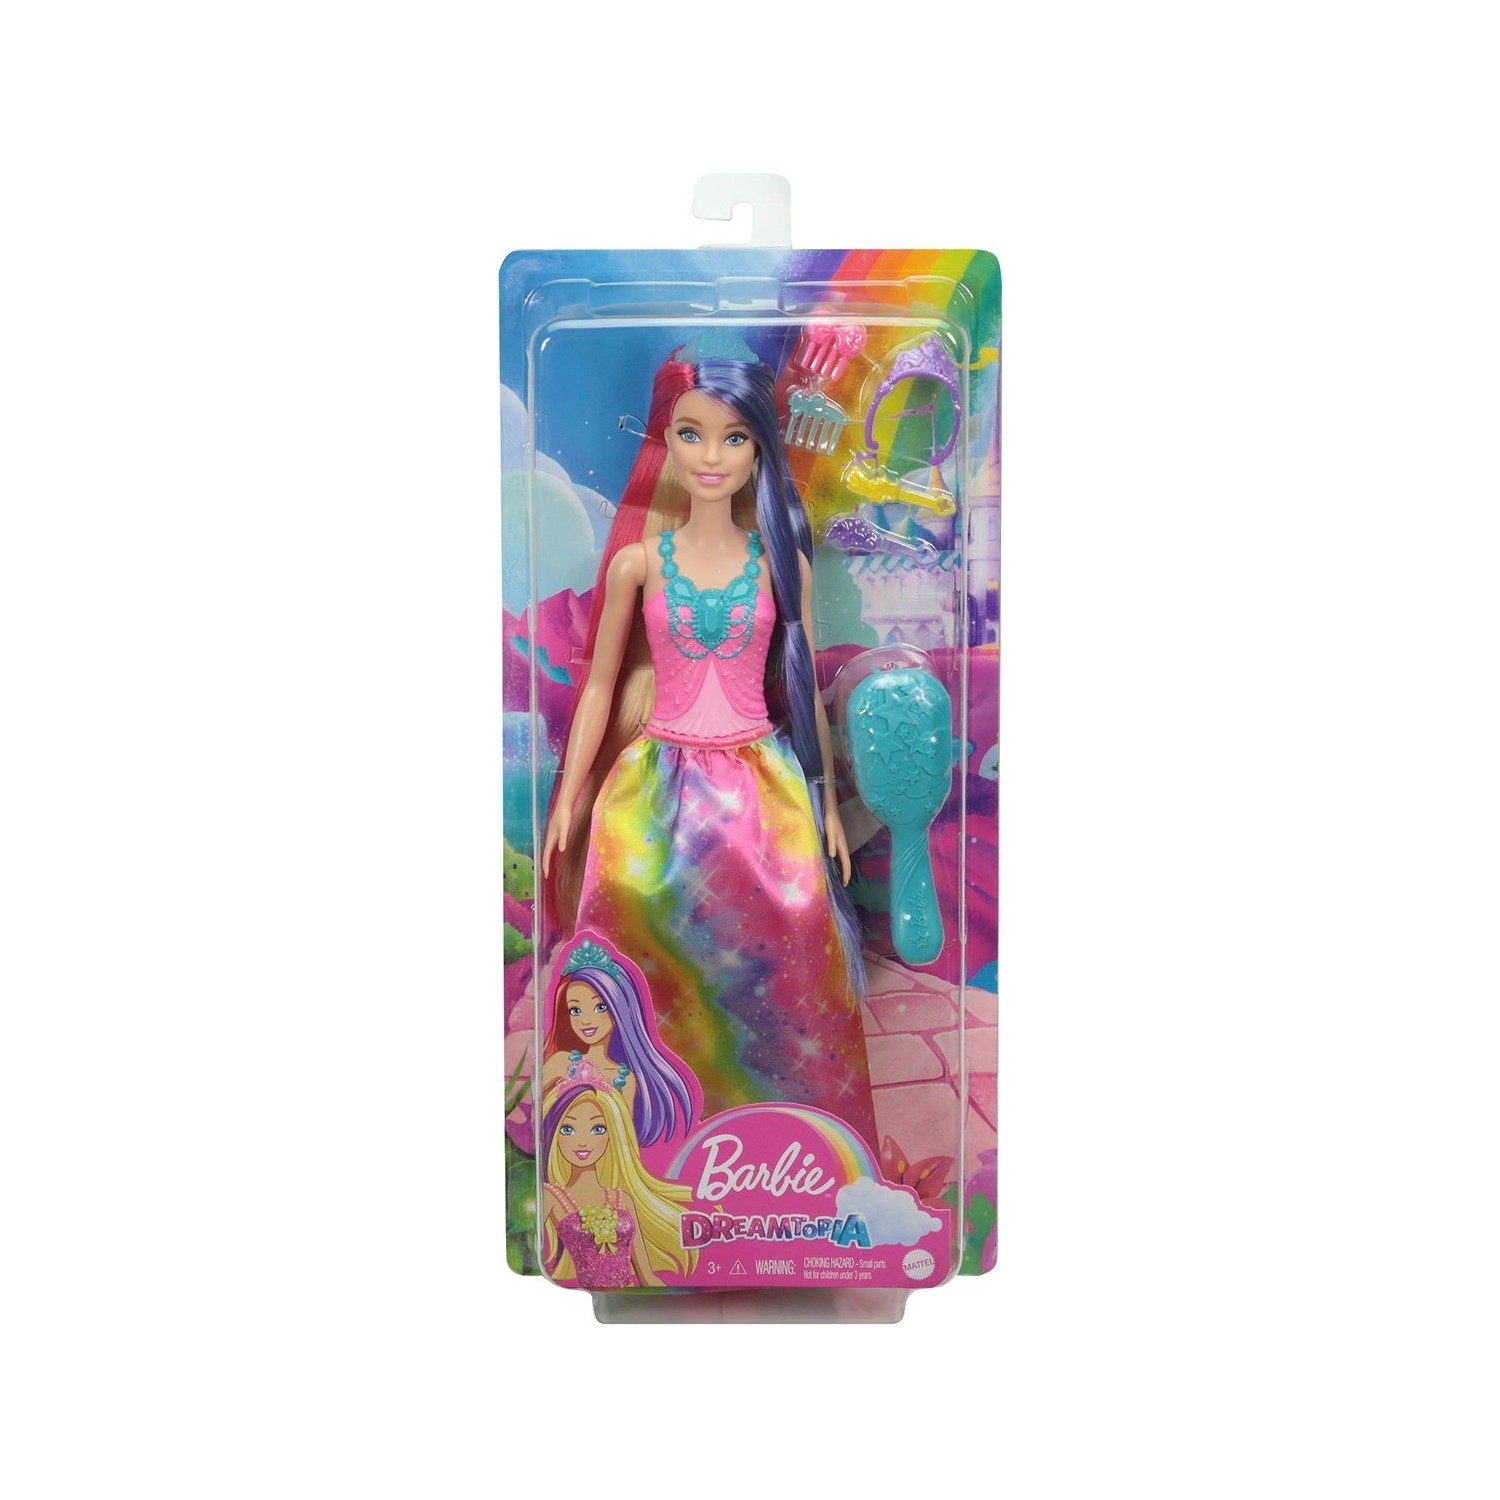 Кукла Barbie Barbie Dreamtopia Dreamland GTF37 куклы barbie dreamtopia mermaid gjk07